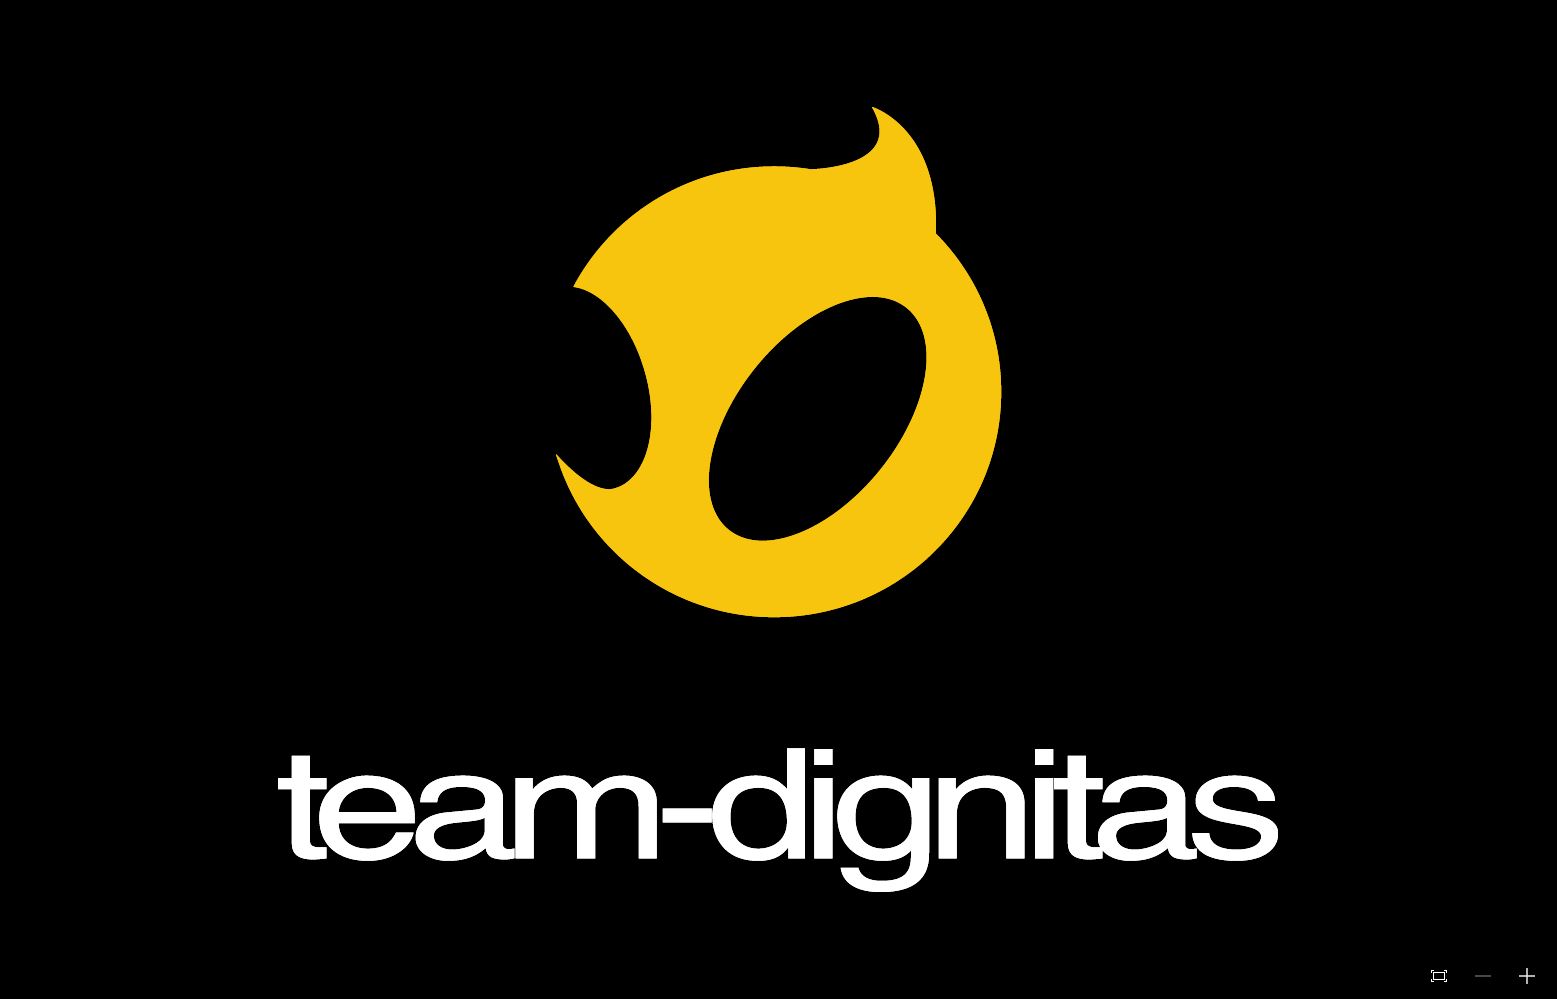 dignitas logo